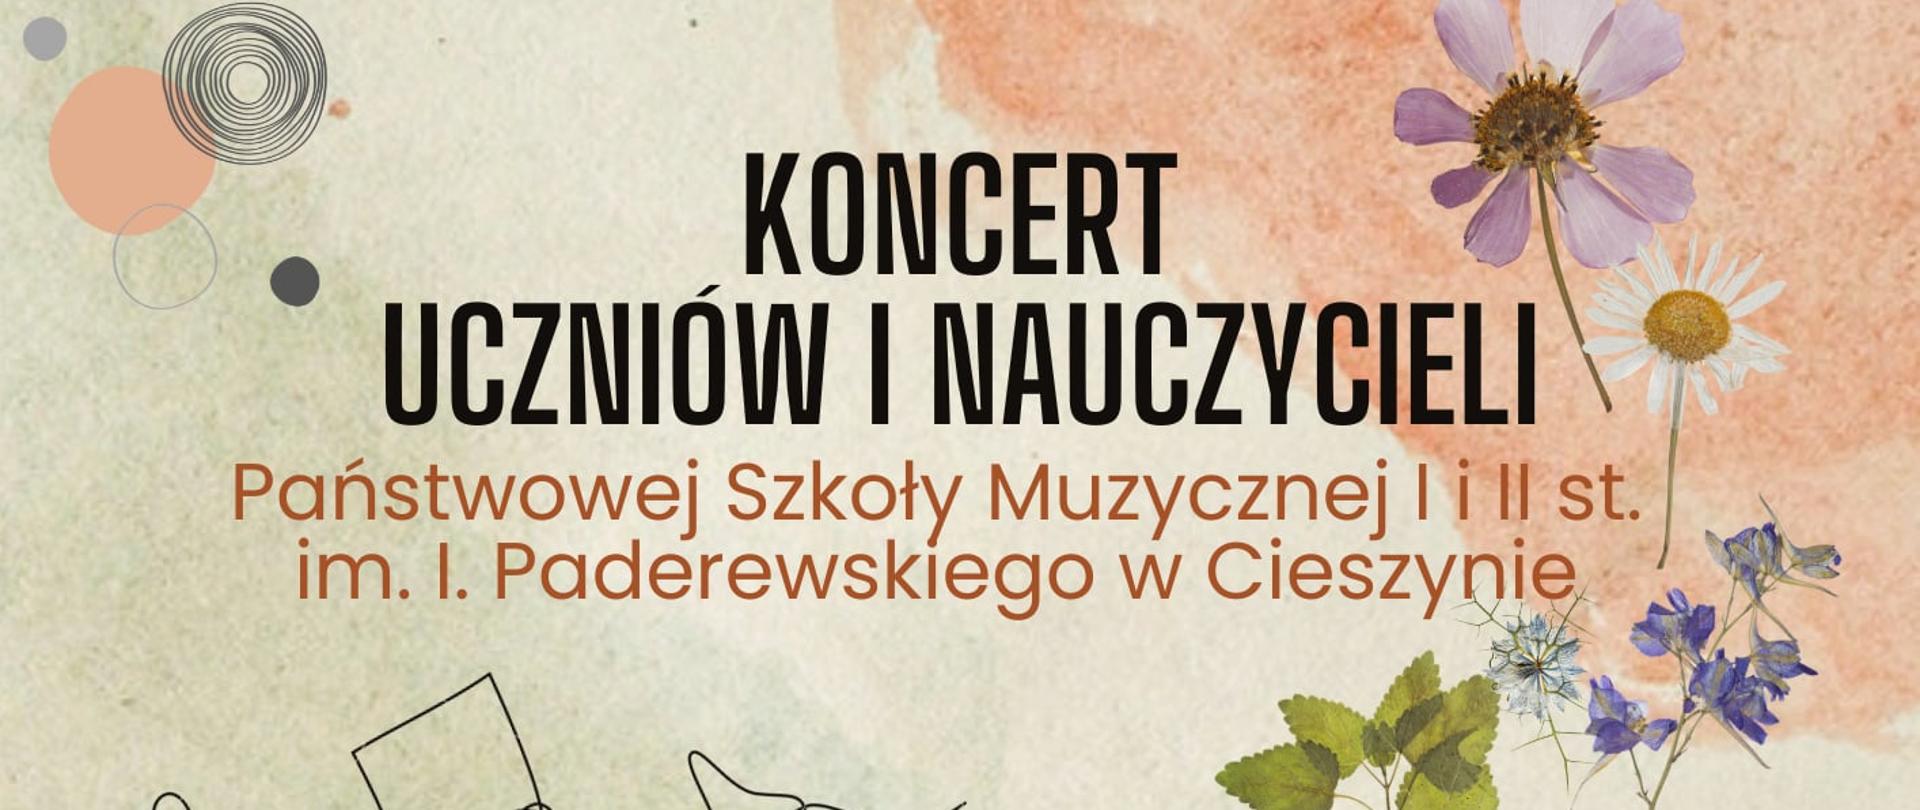 Plakat na koncert uczniów i pedagogów PSM I i II st. im. Ignacego Paderewskiego w Cieszynie "W muzycznym ogrodzie"